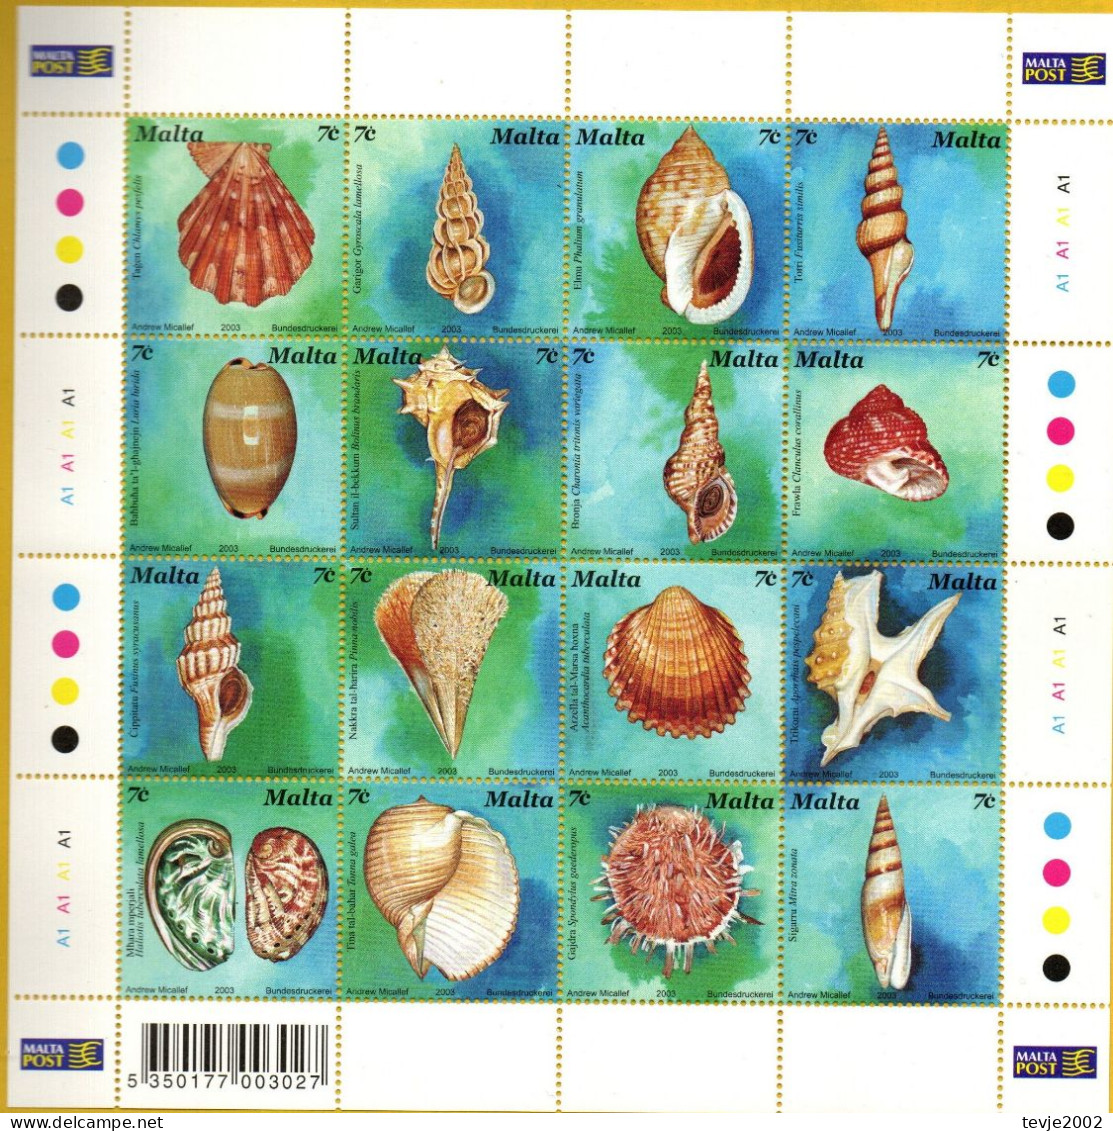 Malta 2003 - Mi.Nr. 1286 - 1301 Kleinbogen - Postfrisch MNH - Tiere Animals Muscheln Shellfish - Conchiglie